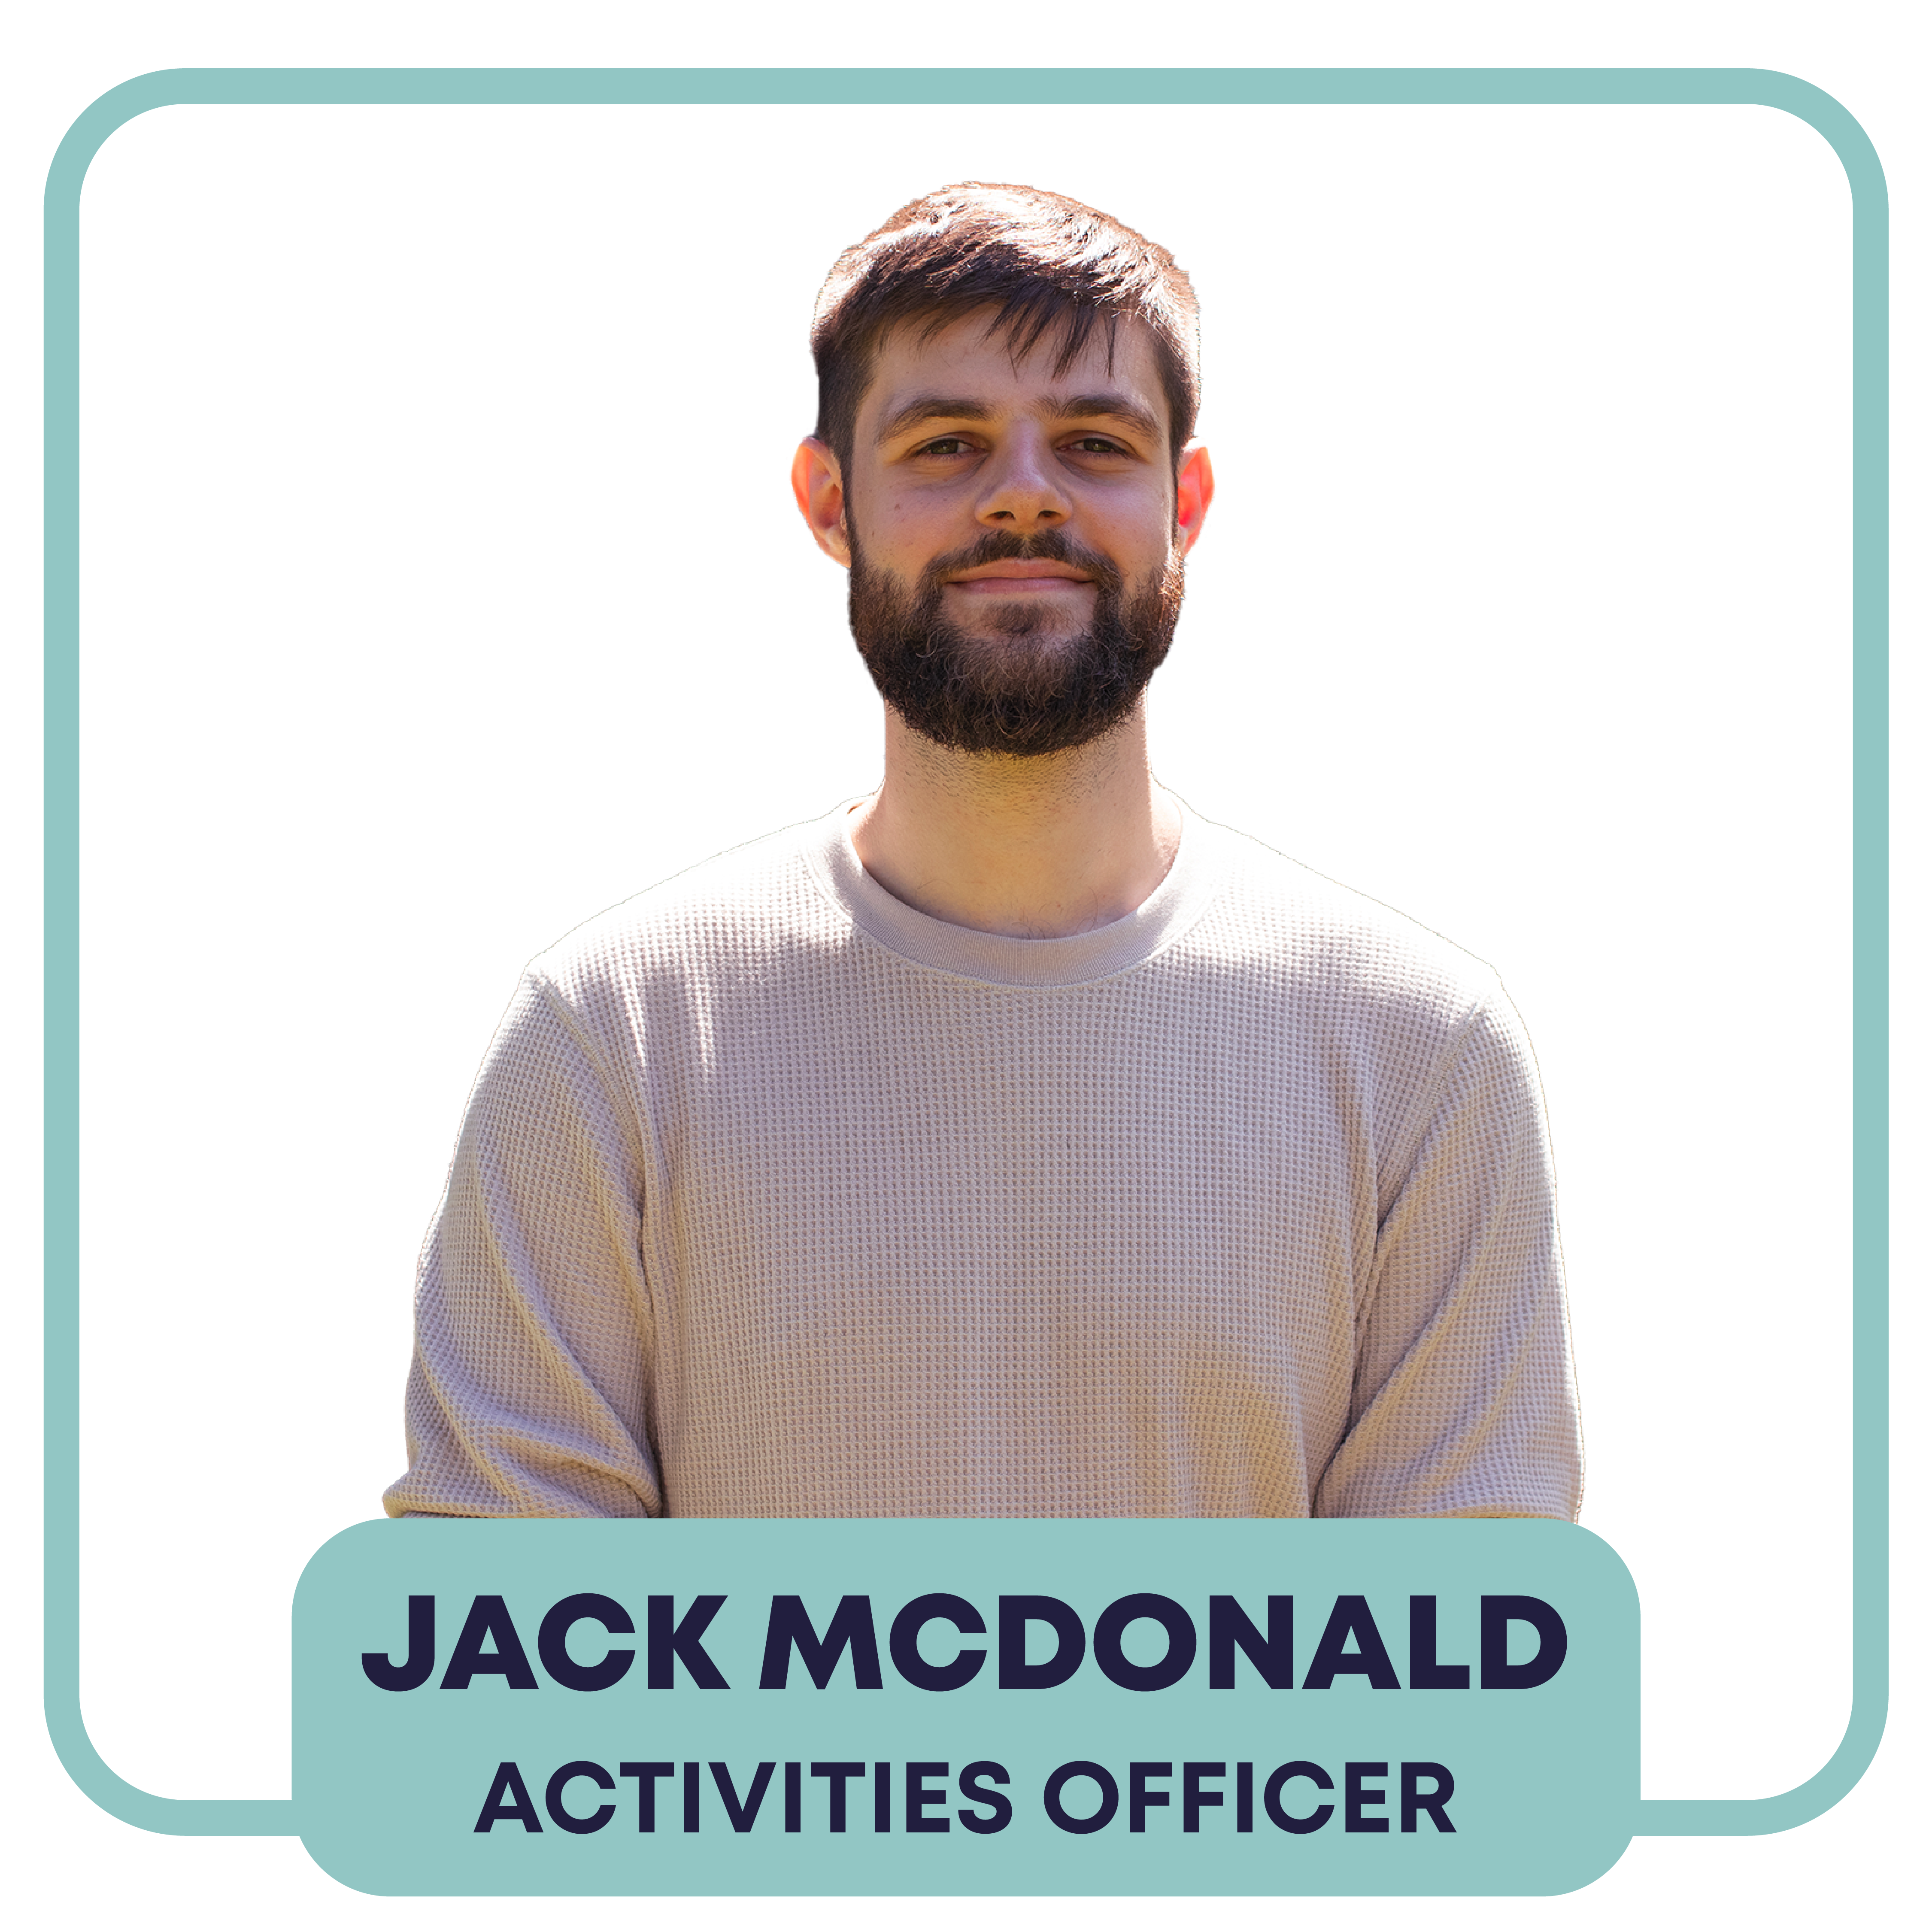 Jack McDonald - Activities Officer - Pronouns: he/him